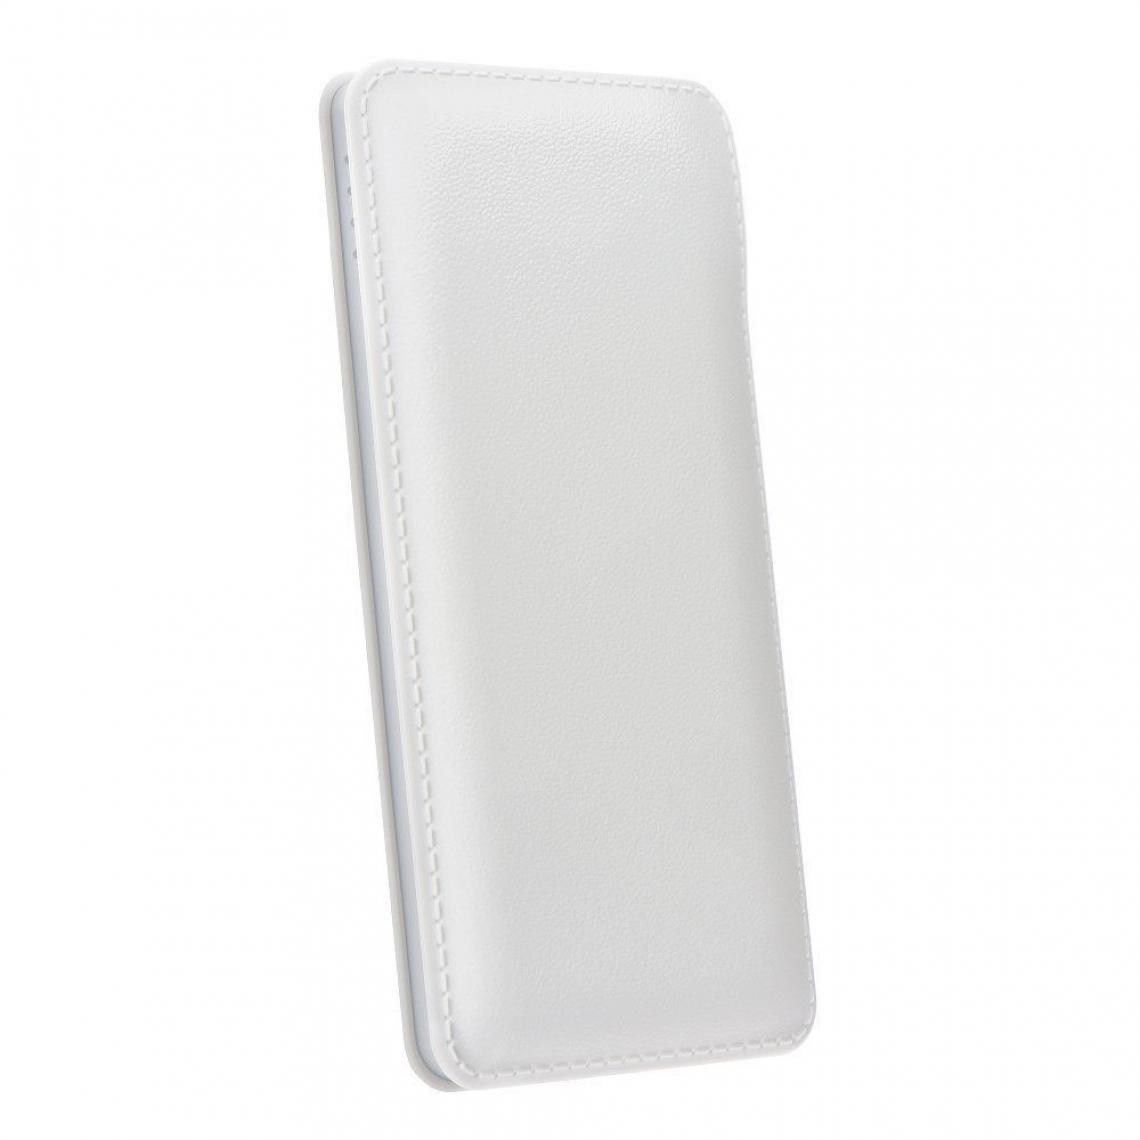 Ozzzo - Chargeur batterie externe 30000 mAh powerbank ozzzo blanc pour Samsung Galaxy J4 Core - Autres accessoires smartphone